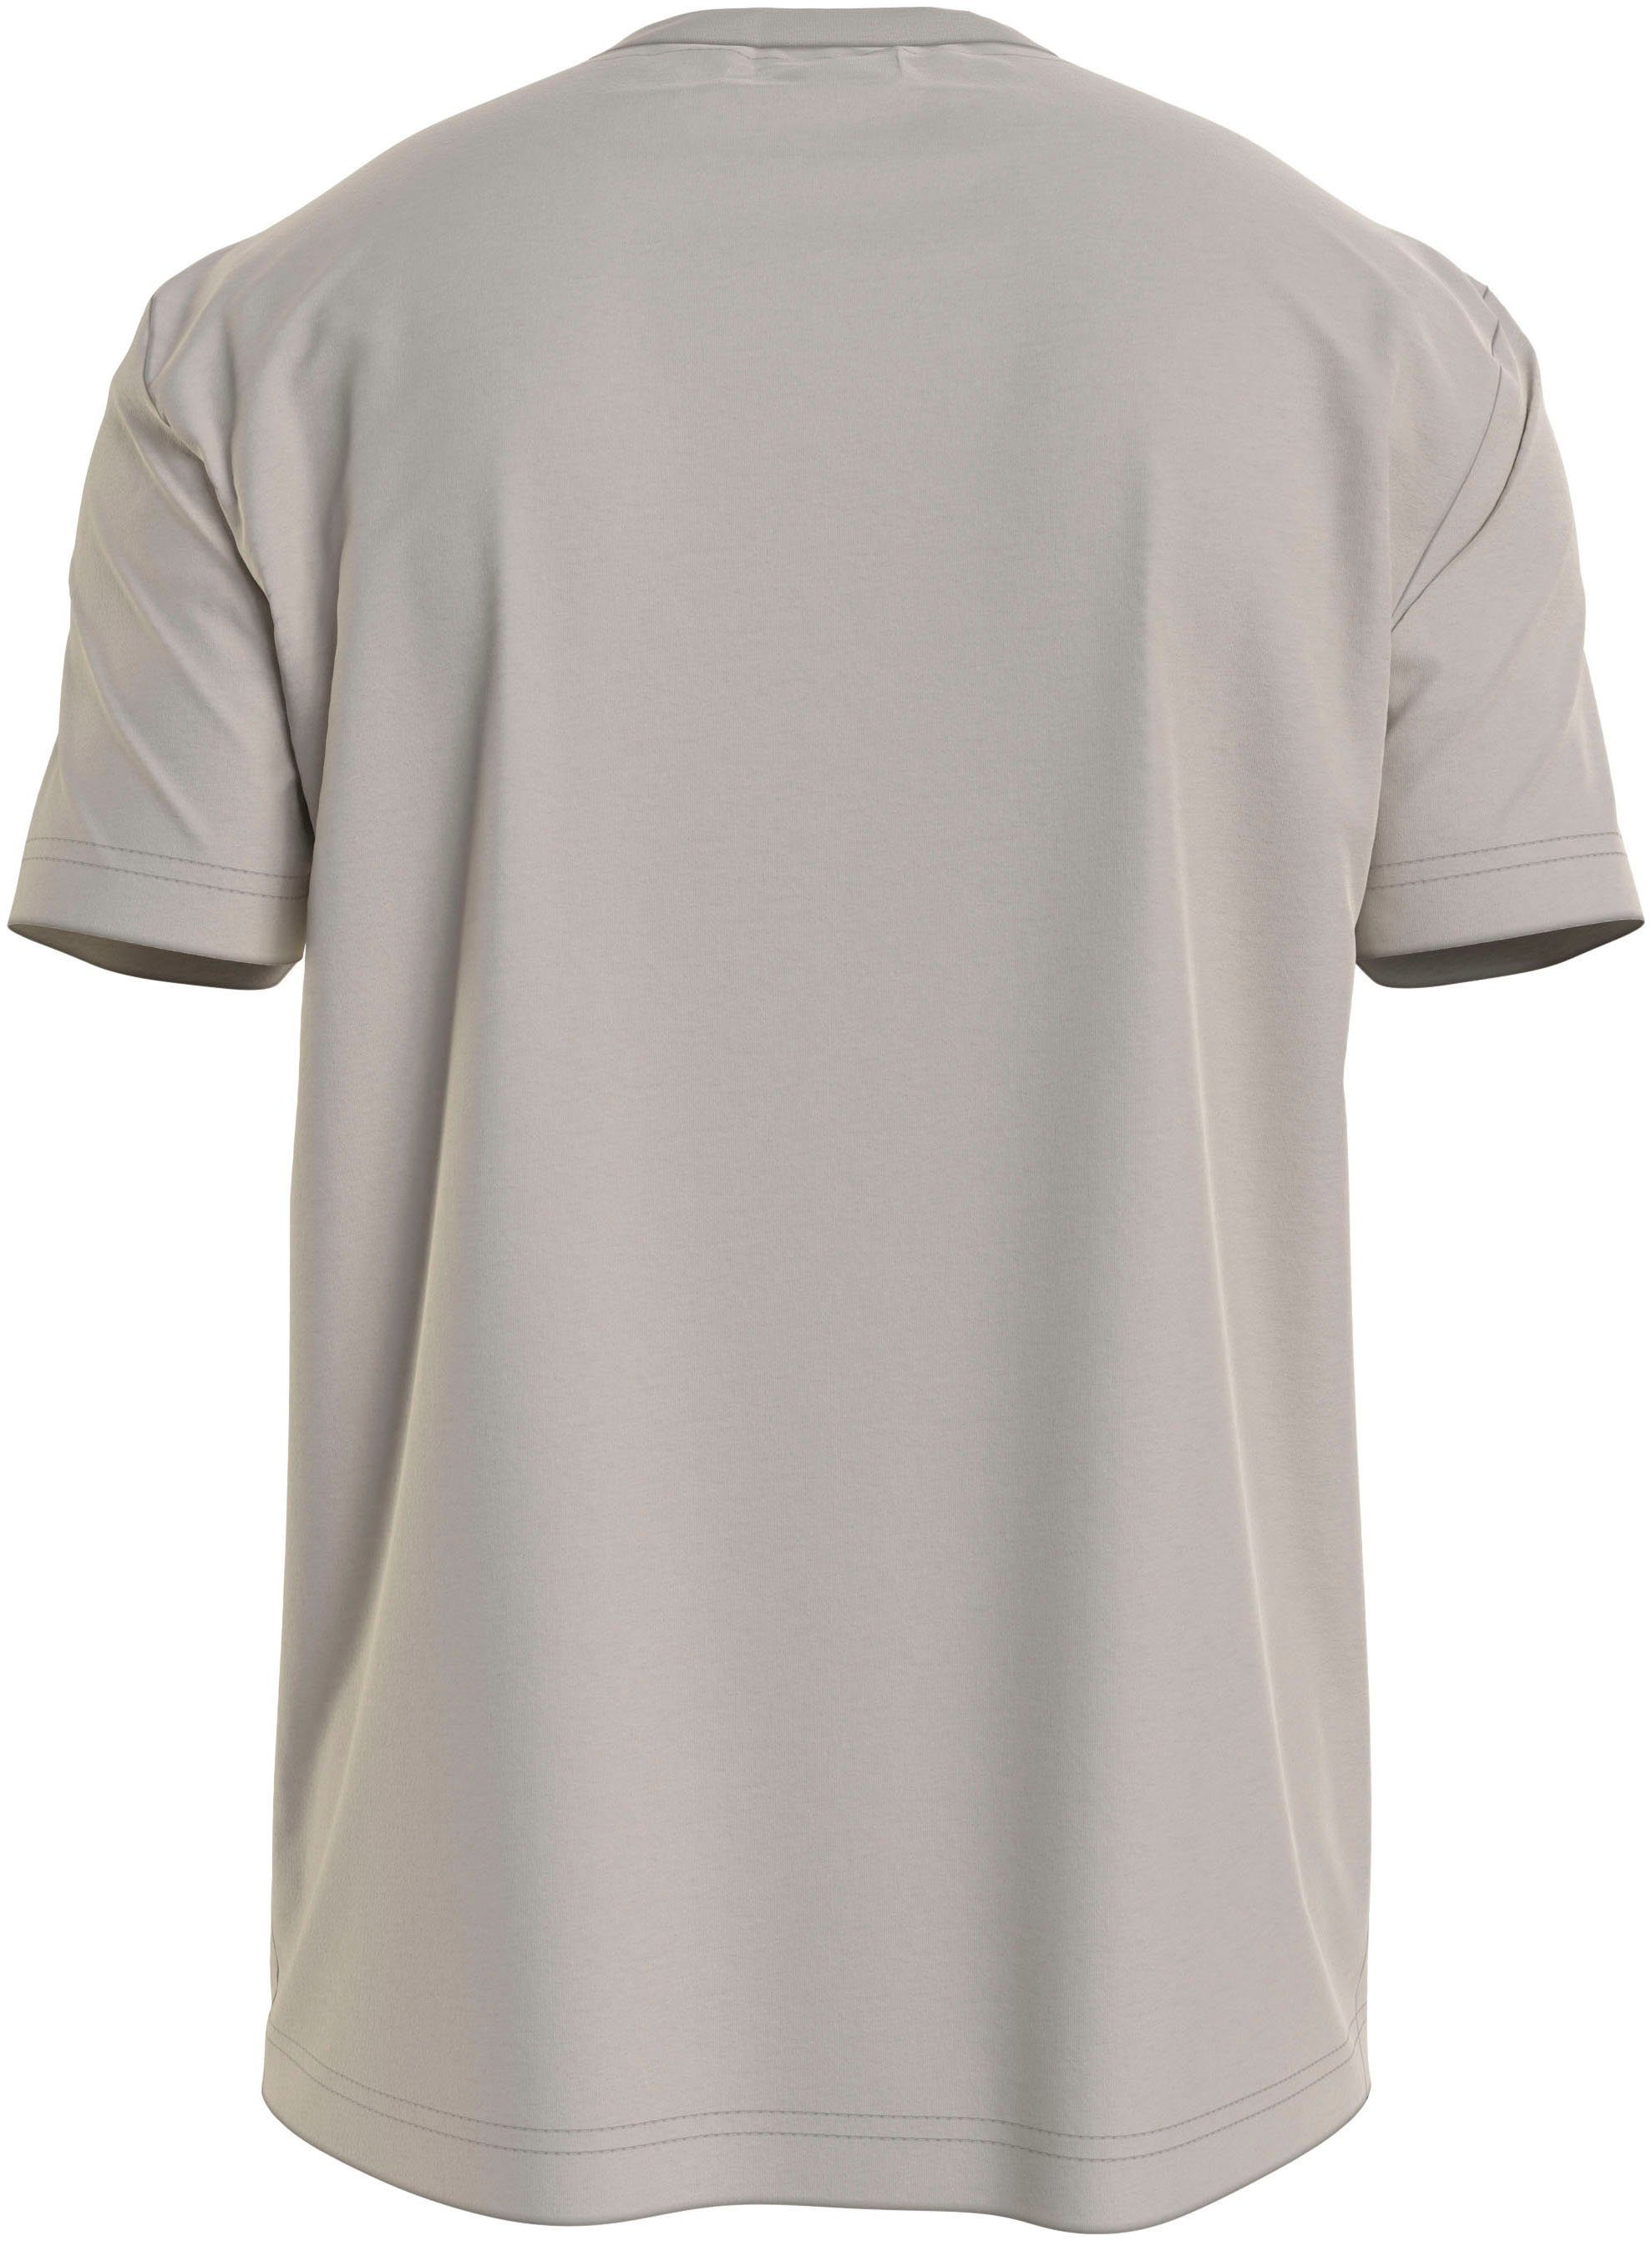 Calvin Klein T-Shirt Markenlabel Stony mit aufgedrucktem Beige HERO COMFORT LOGO T-SHIRT